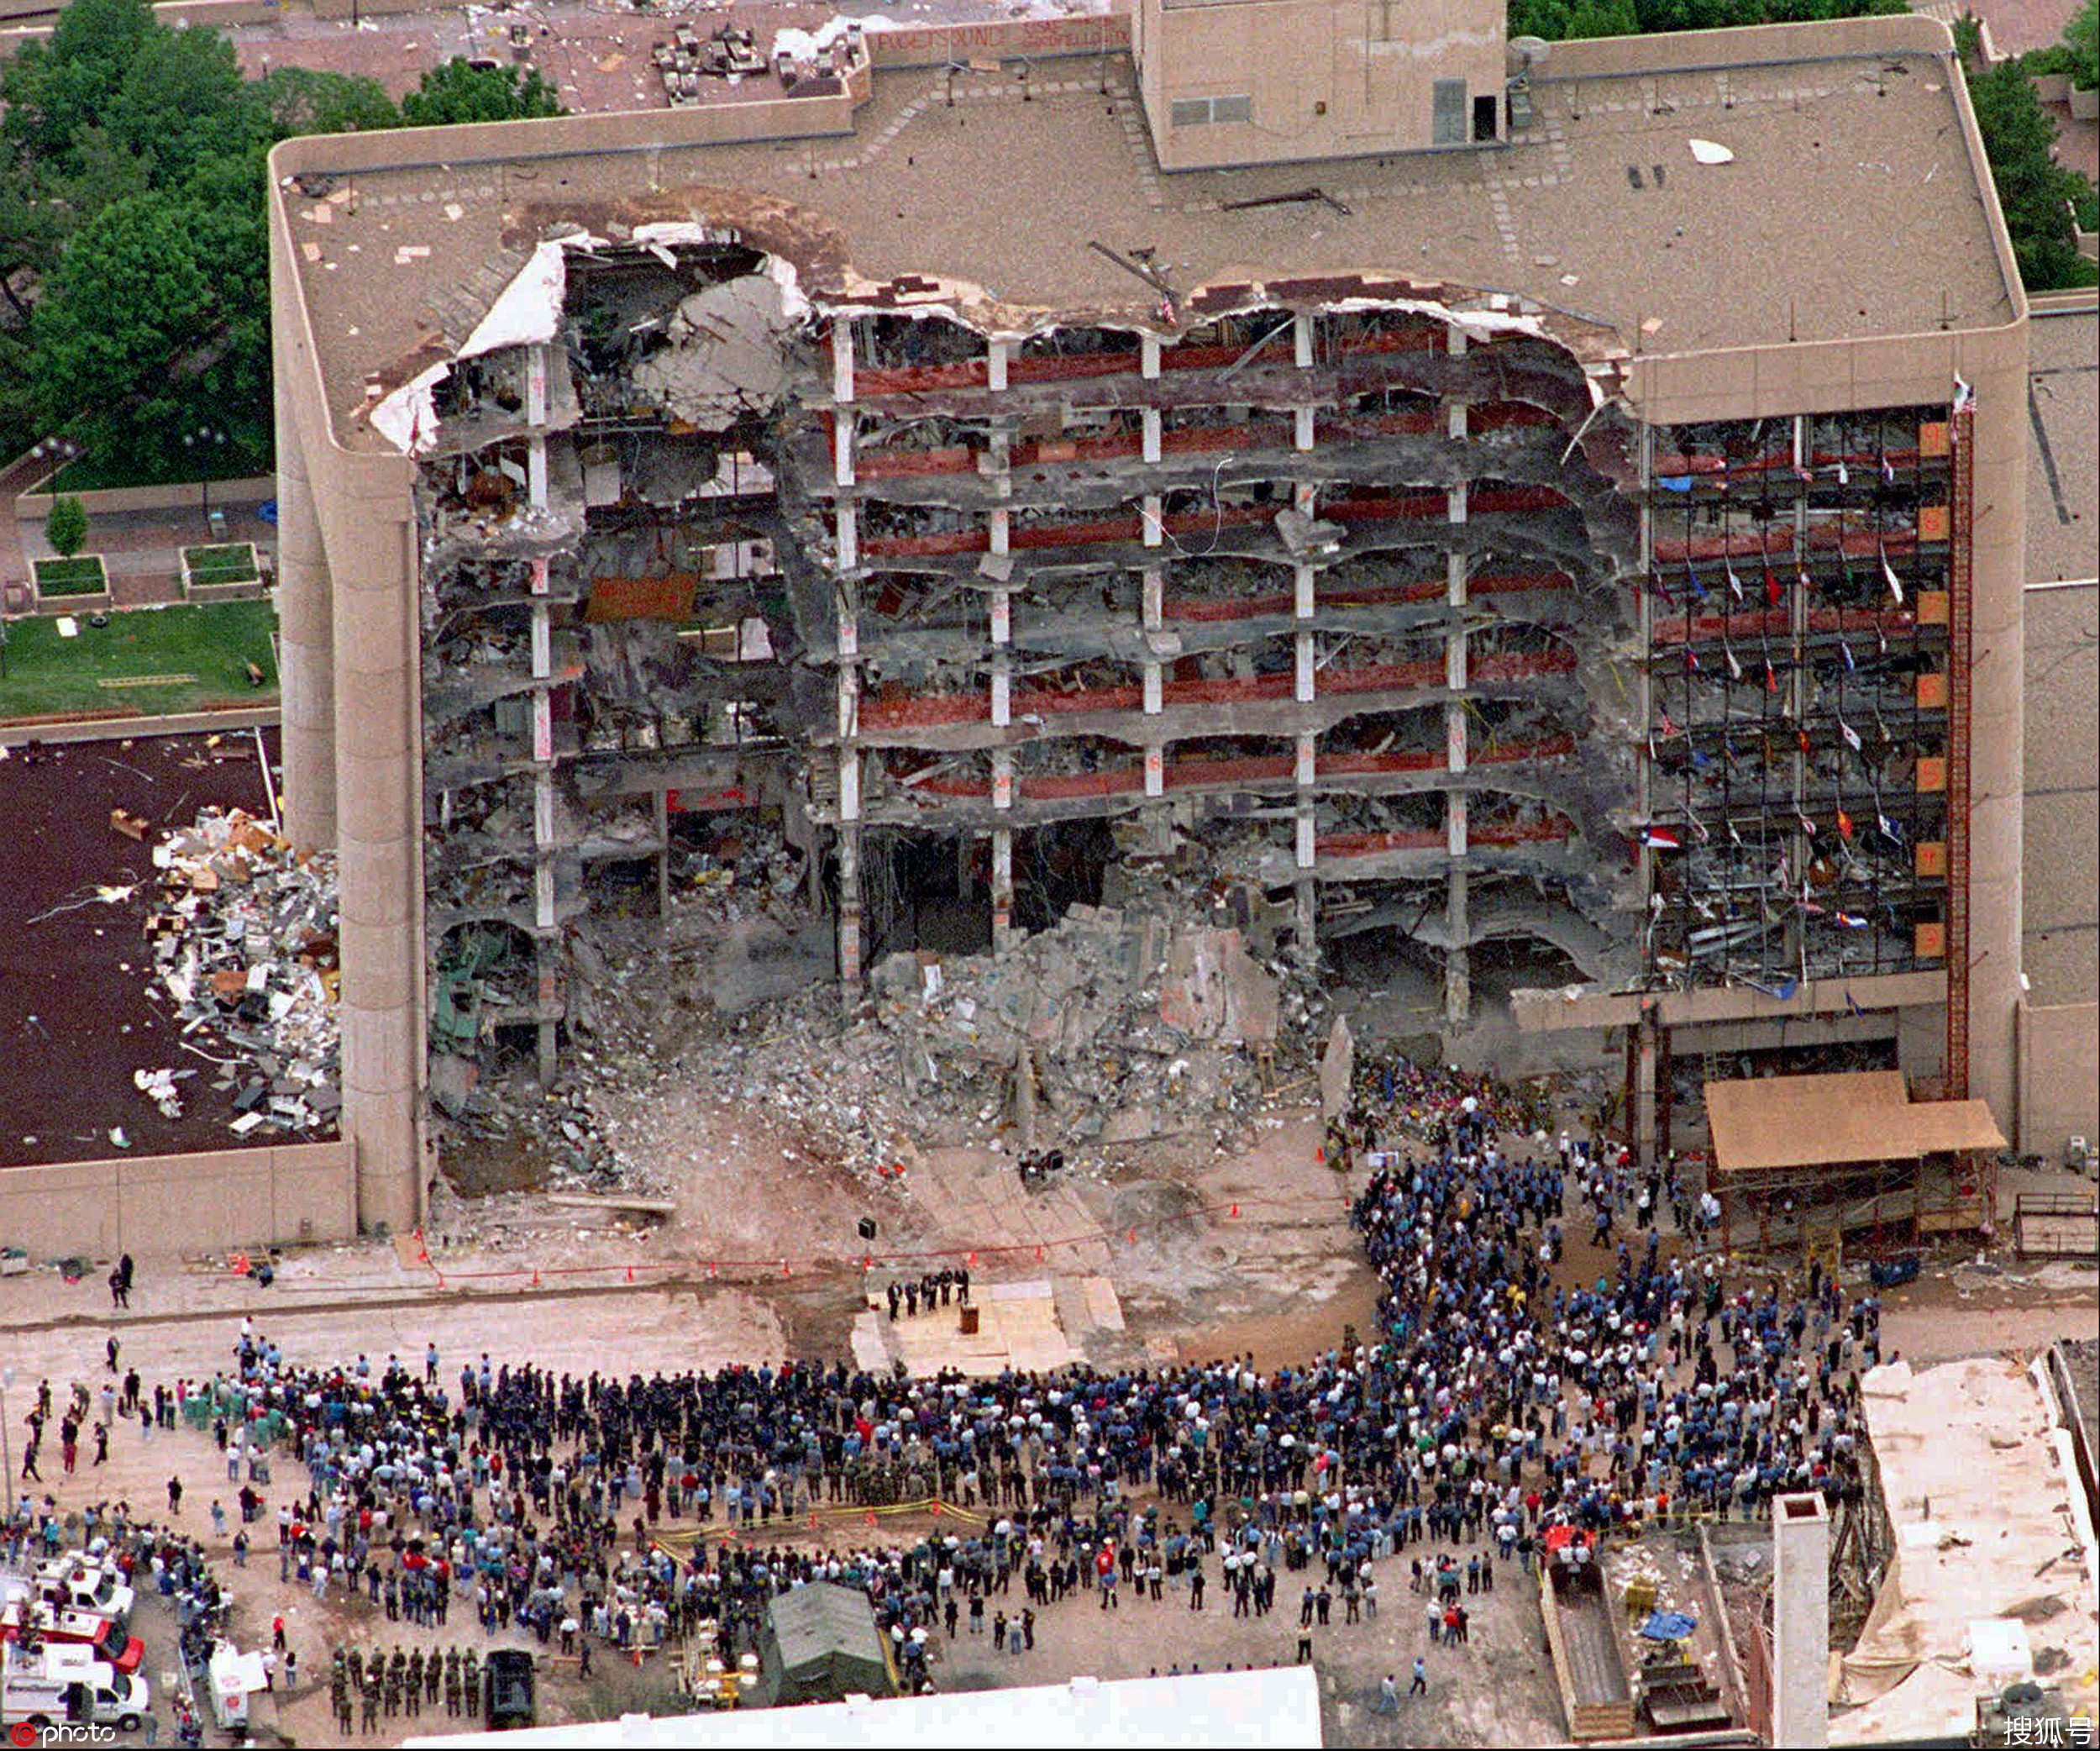 比911更恐怖 这场爆炸案造成6亿美元经济损失